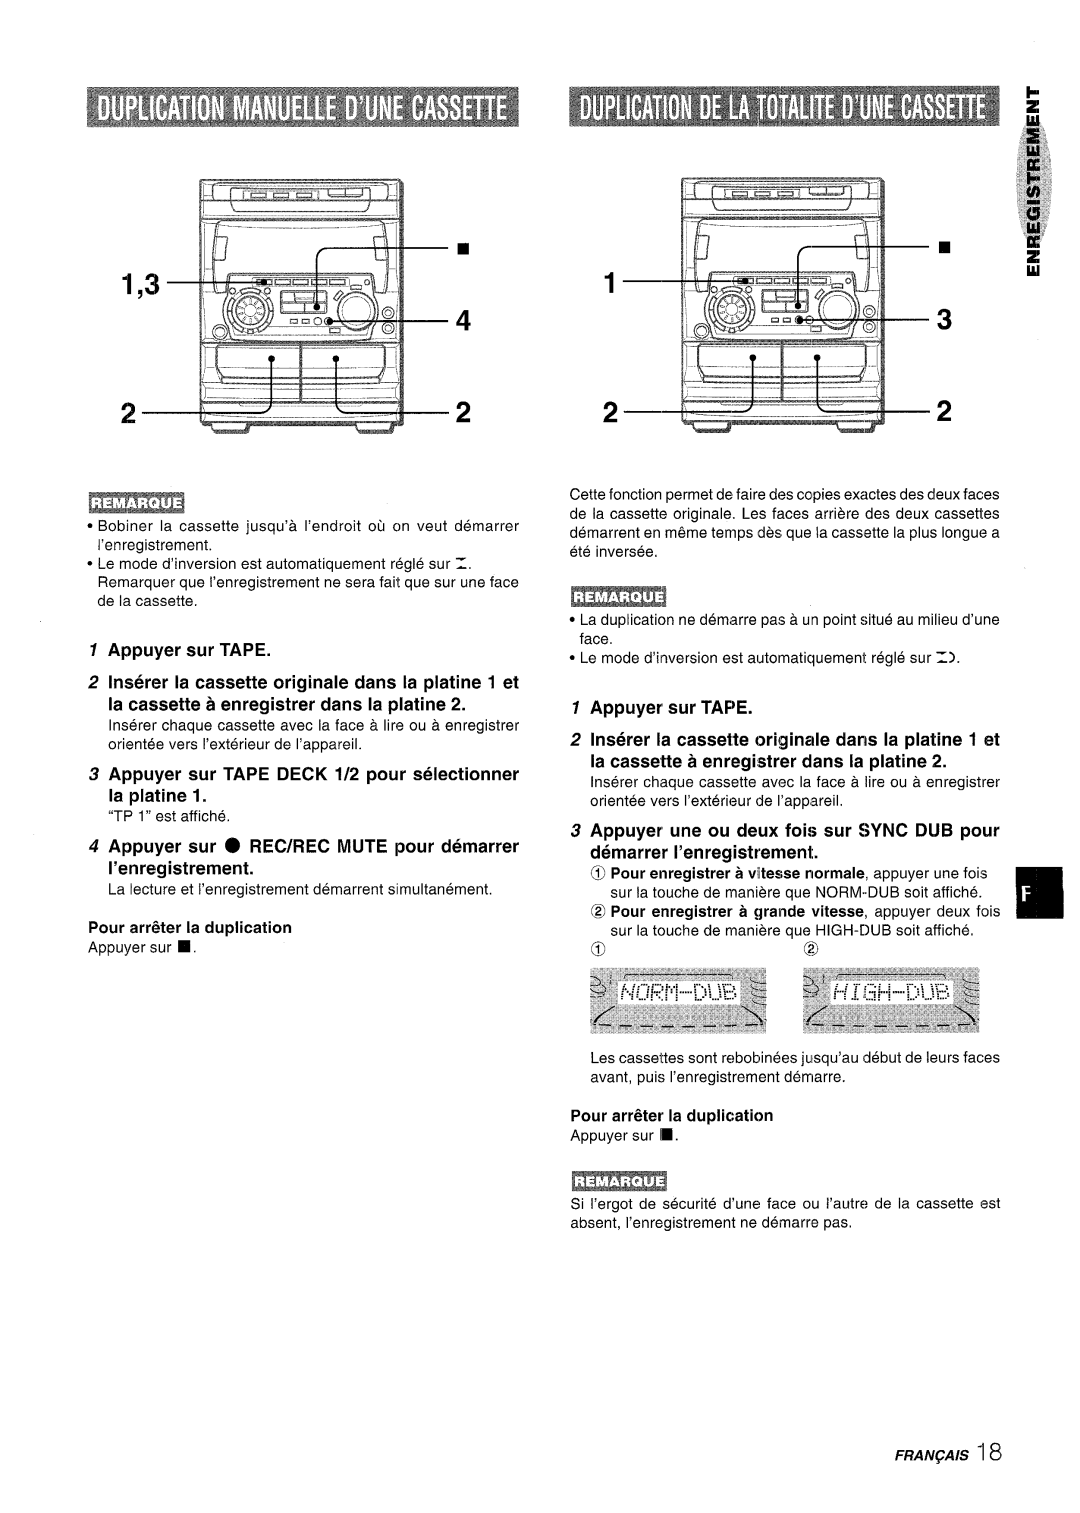 Sony NSX-A707 manual ~ ~.i, Appuyer sur TAPE DECK 1/2 pour selectionner la platine, Appuyer sur TAF~E 